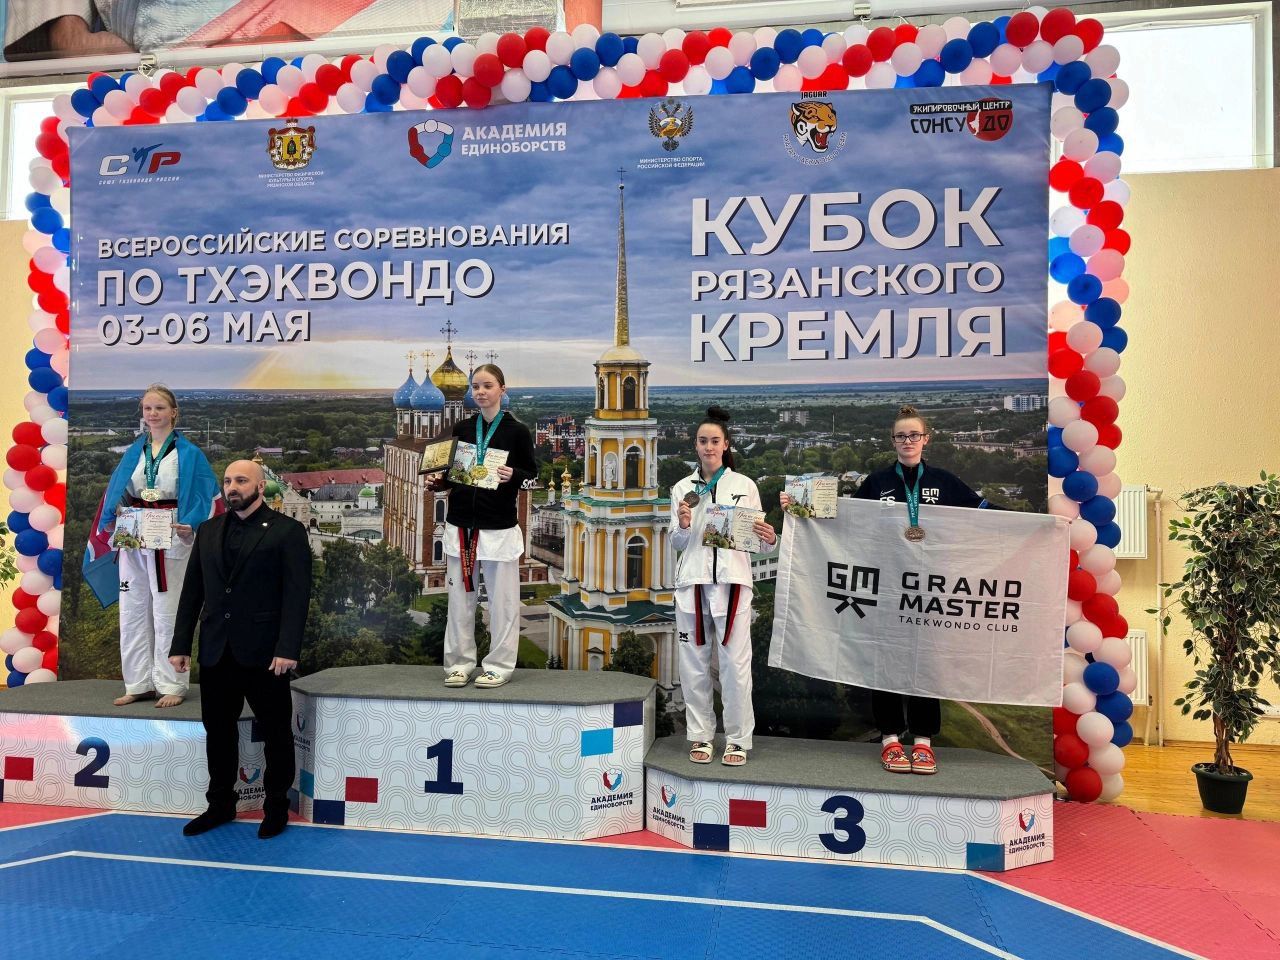 Менделеевские тхэквондистки привезли 2 медали с «Кубка Рязанского кремля»